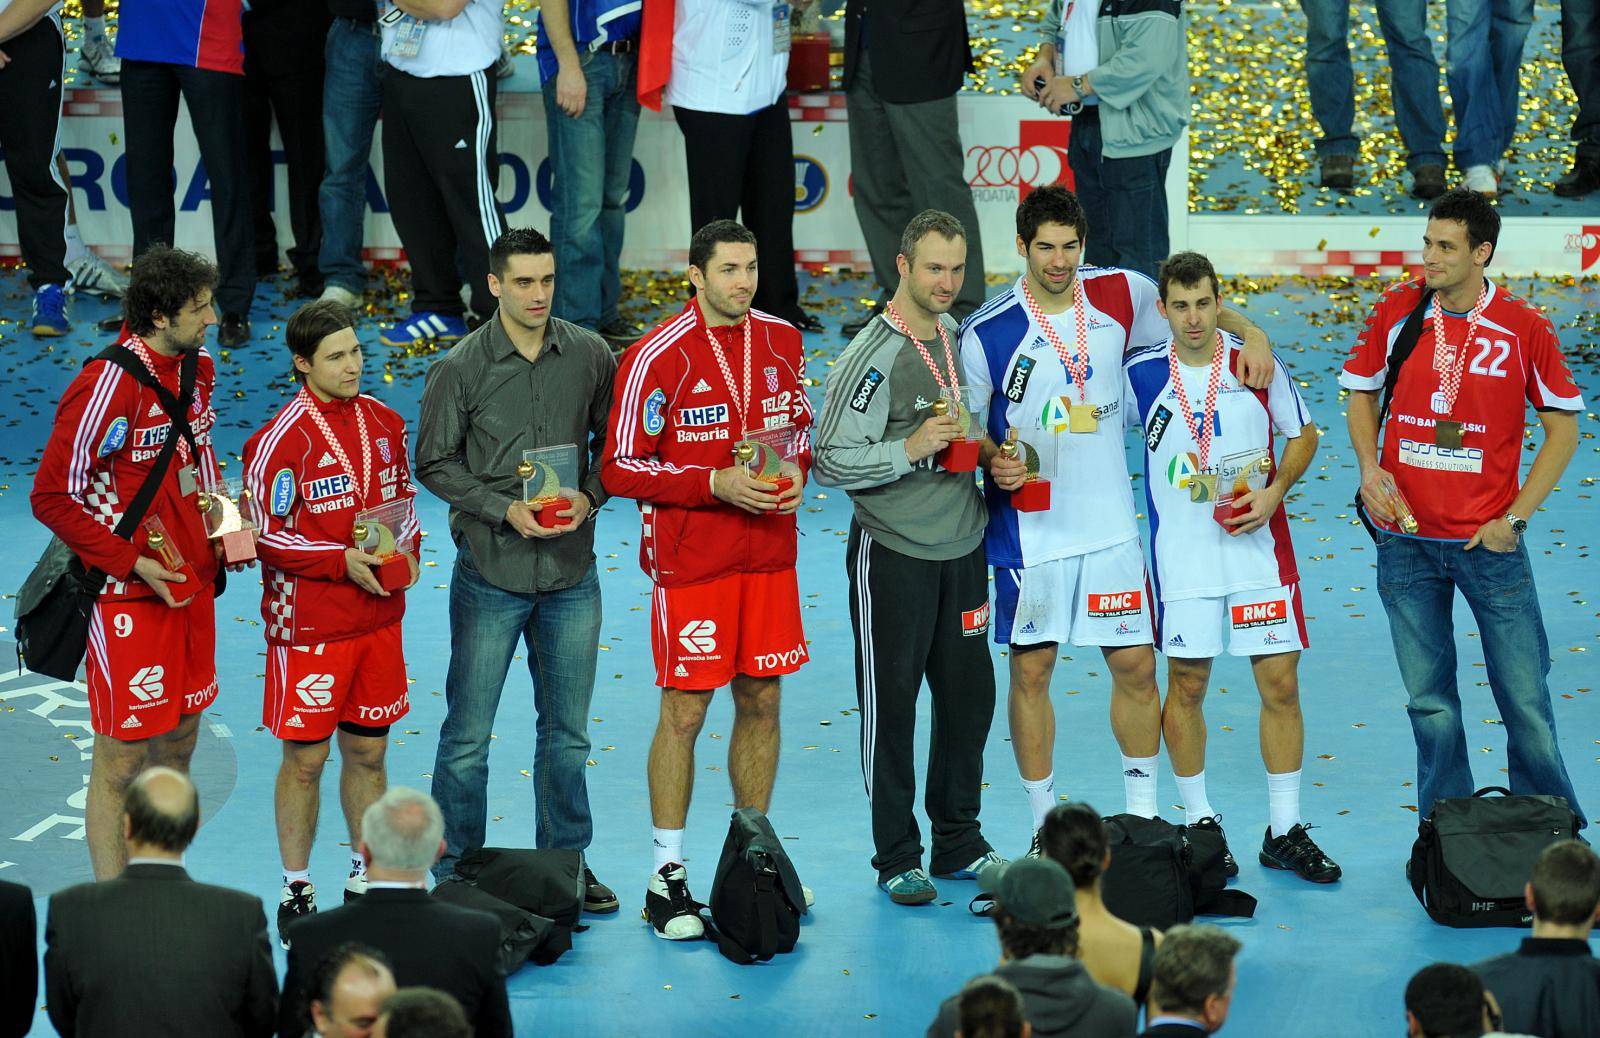 Men's World Handball Championship 2009 - Medal Award Ceremony